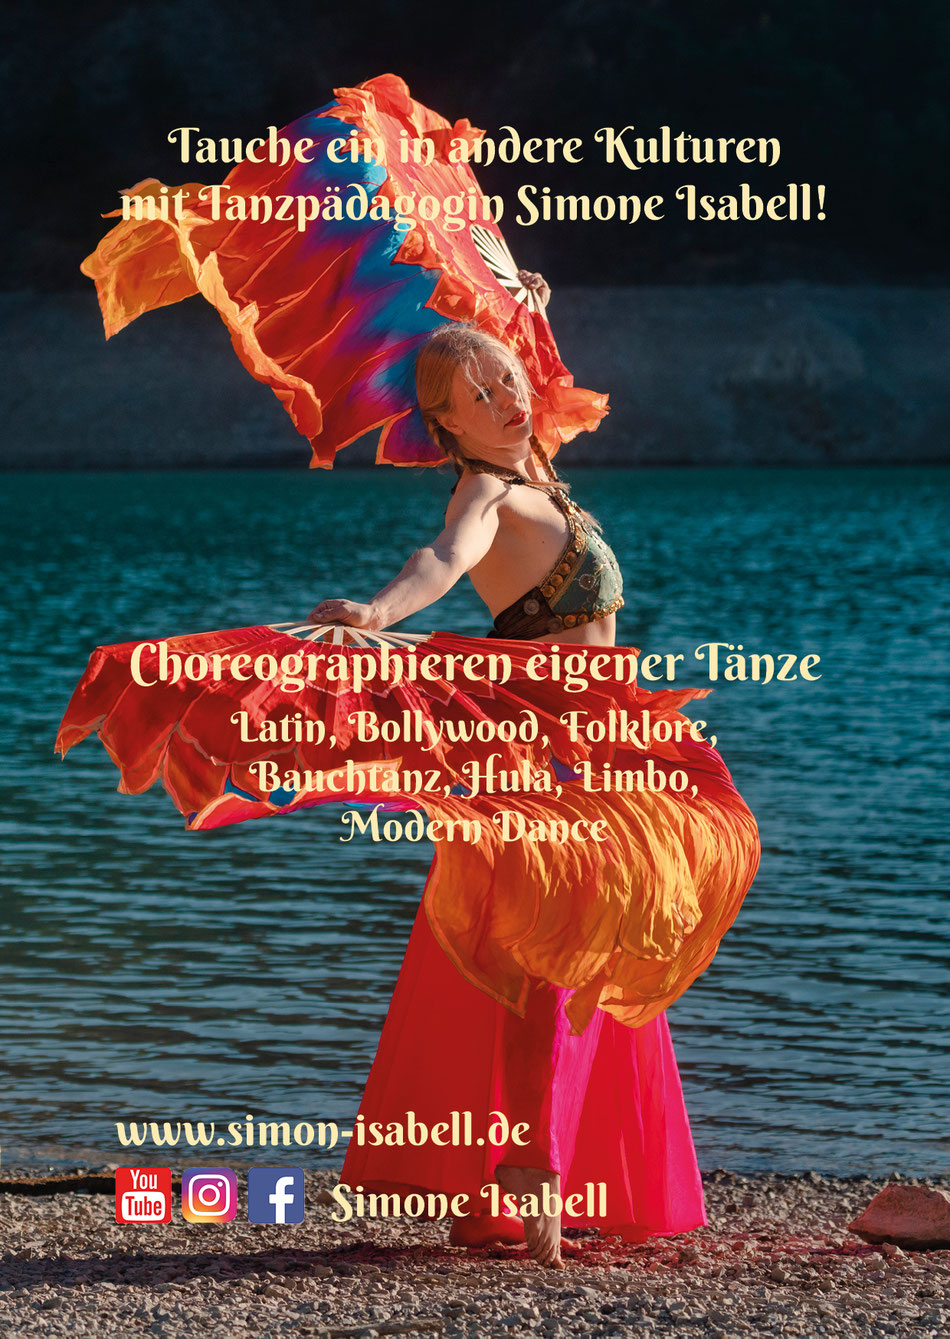 Tanzkurse für Kinder und Jugendluche in Bayern, Eichstätt, Tanzen, Kinder, Jugendliche